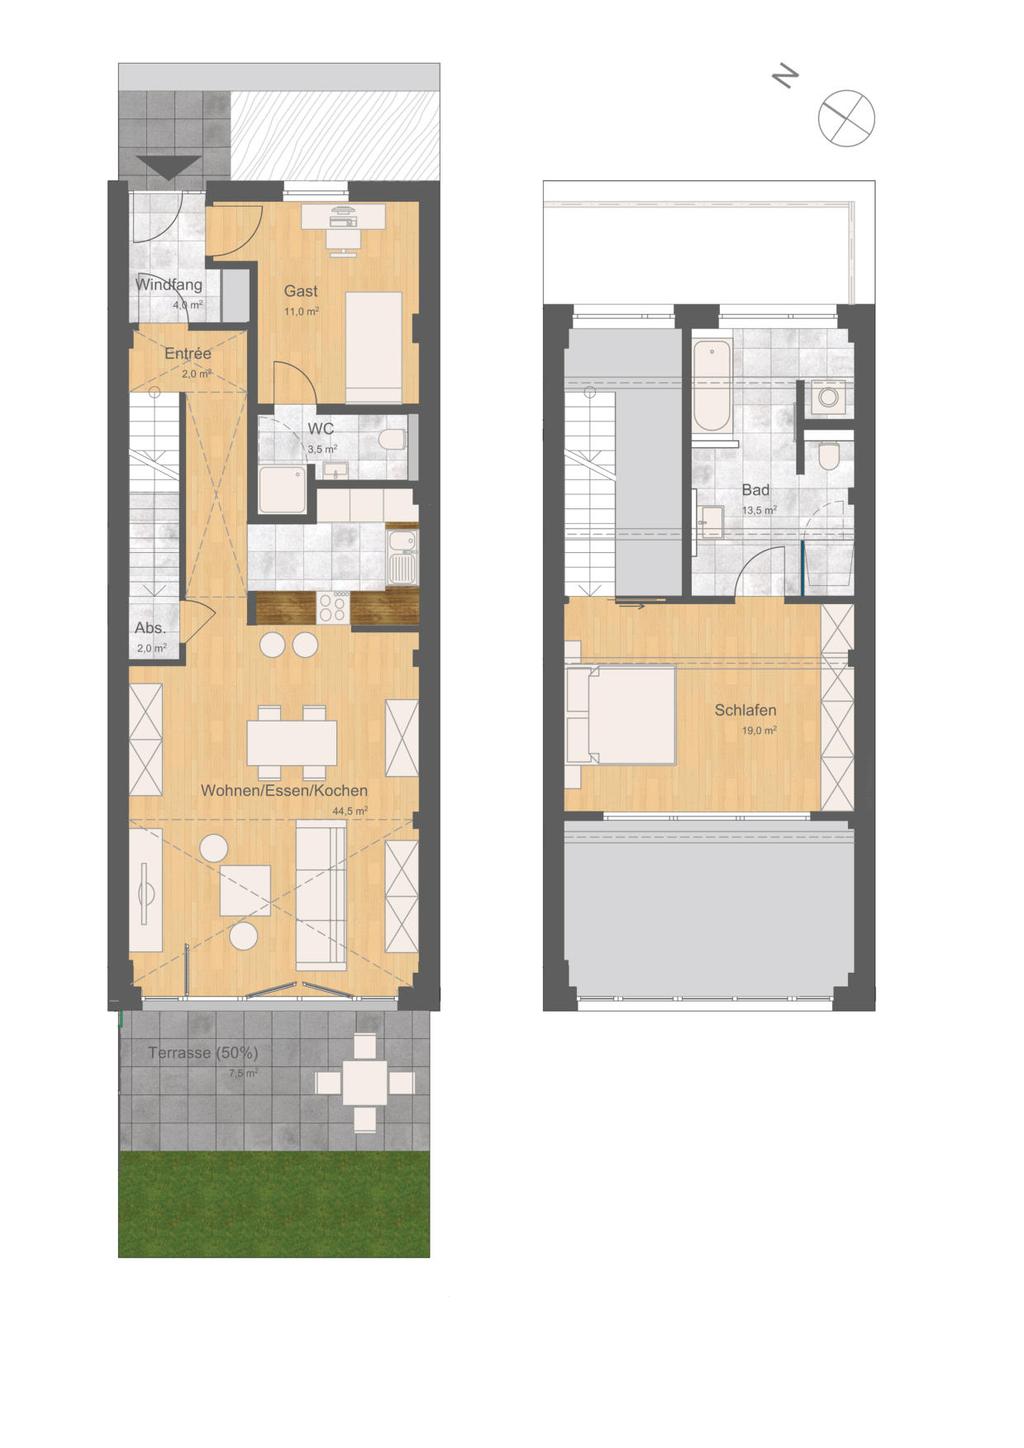 15a WE E1 3-Zimmer-Wohnloft mit Gartenterrasse EG & 1.OG 107 qm Hinweis: Bei den Maßangaben handelt es sich um ca.- Angaben. Darstellungen zu Möbeln, Gartengestaltung etc.